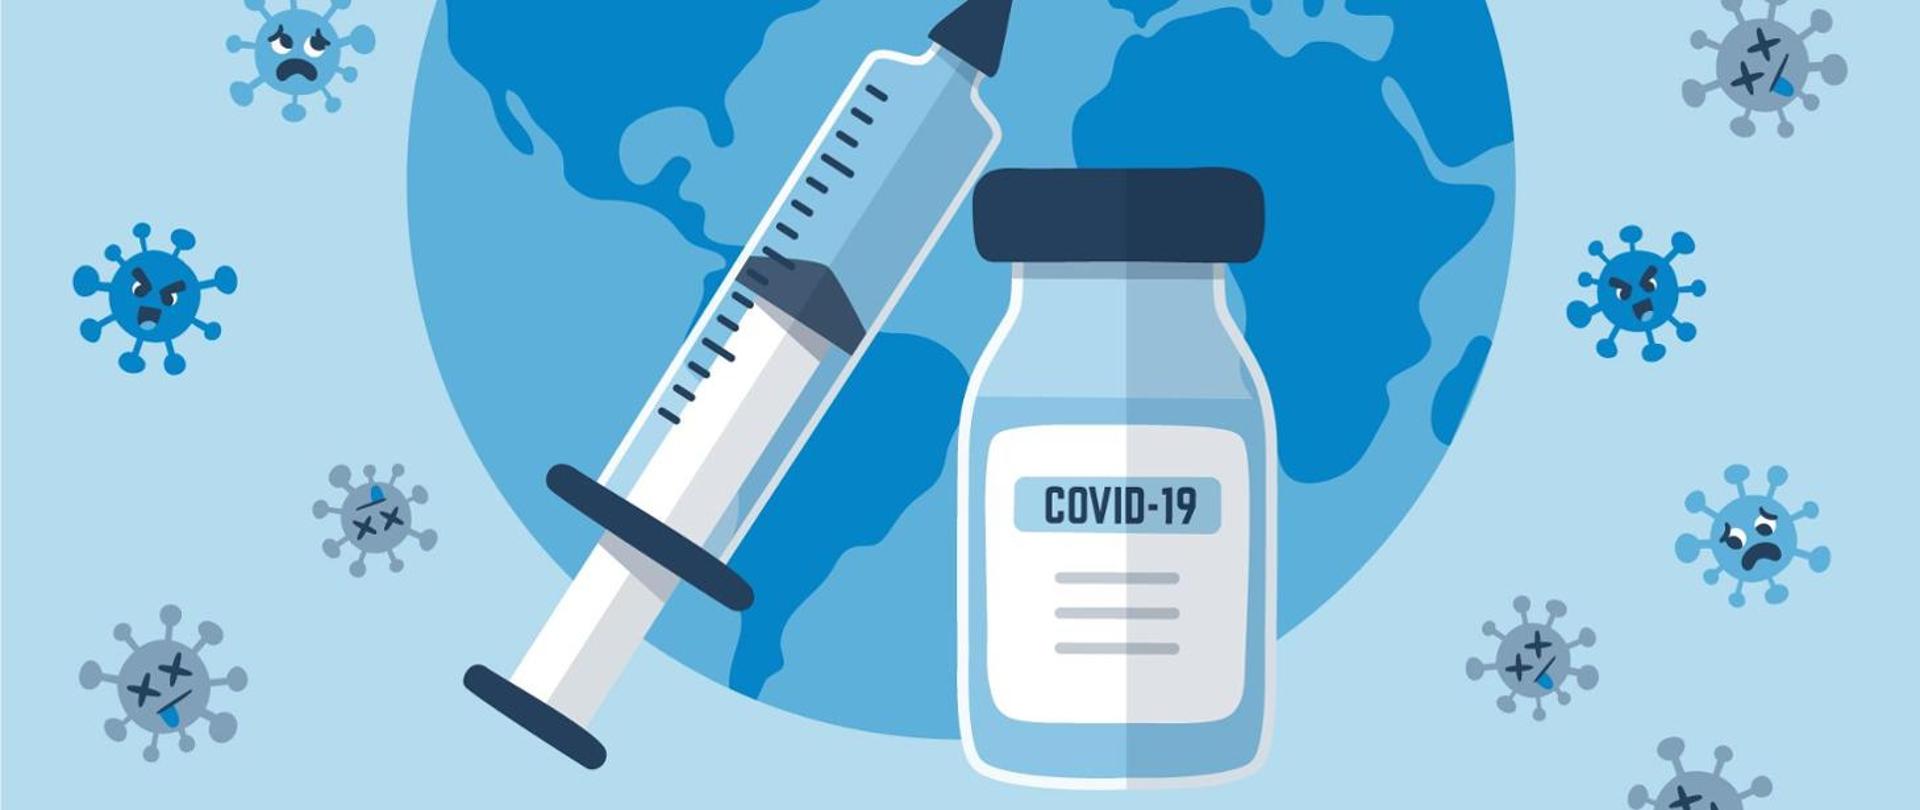 Logo komunikatu o COVID-19 na niebieskim tle niebieskie ikony wirusów, na pierwszym planie duża strzykawka oraz ampułka z napisem COVID-19